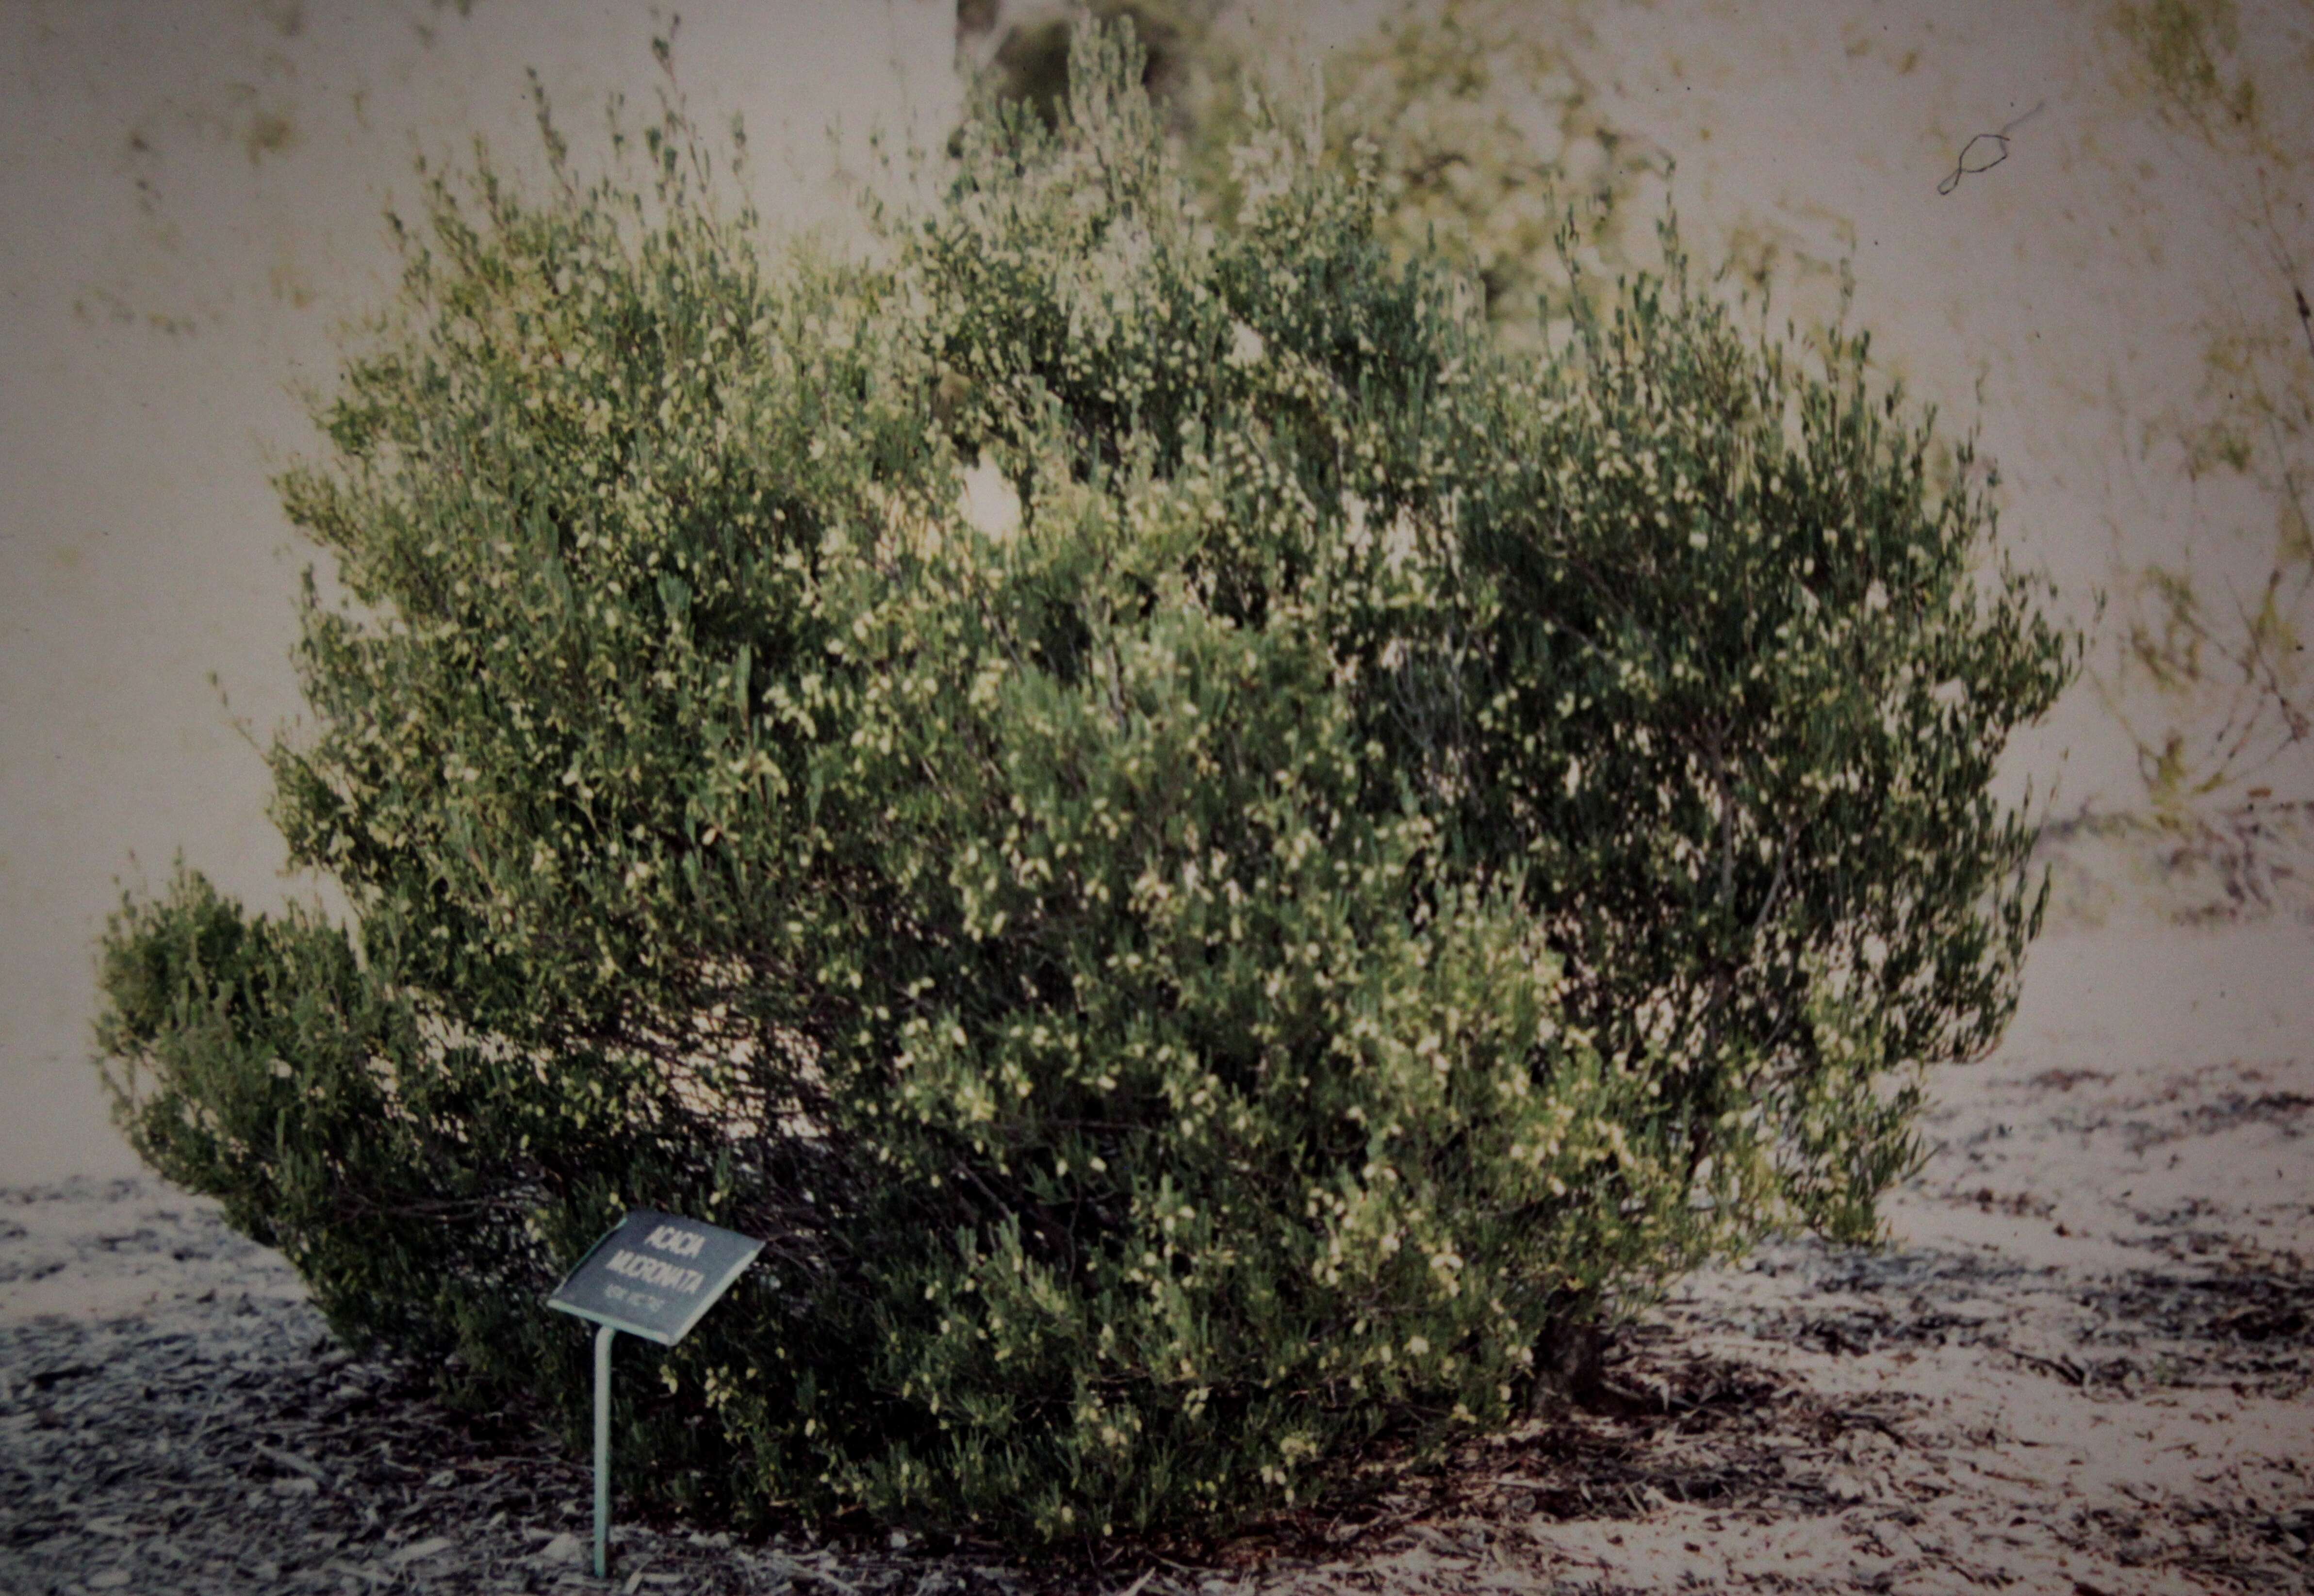 Plancia ëd Acacia mucronata Willd. ex H. L. Wendl.